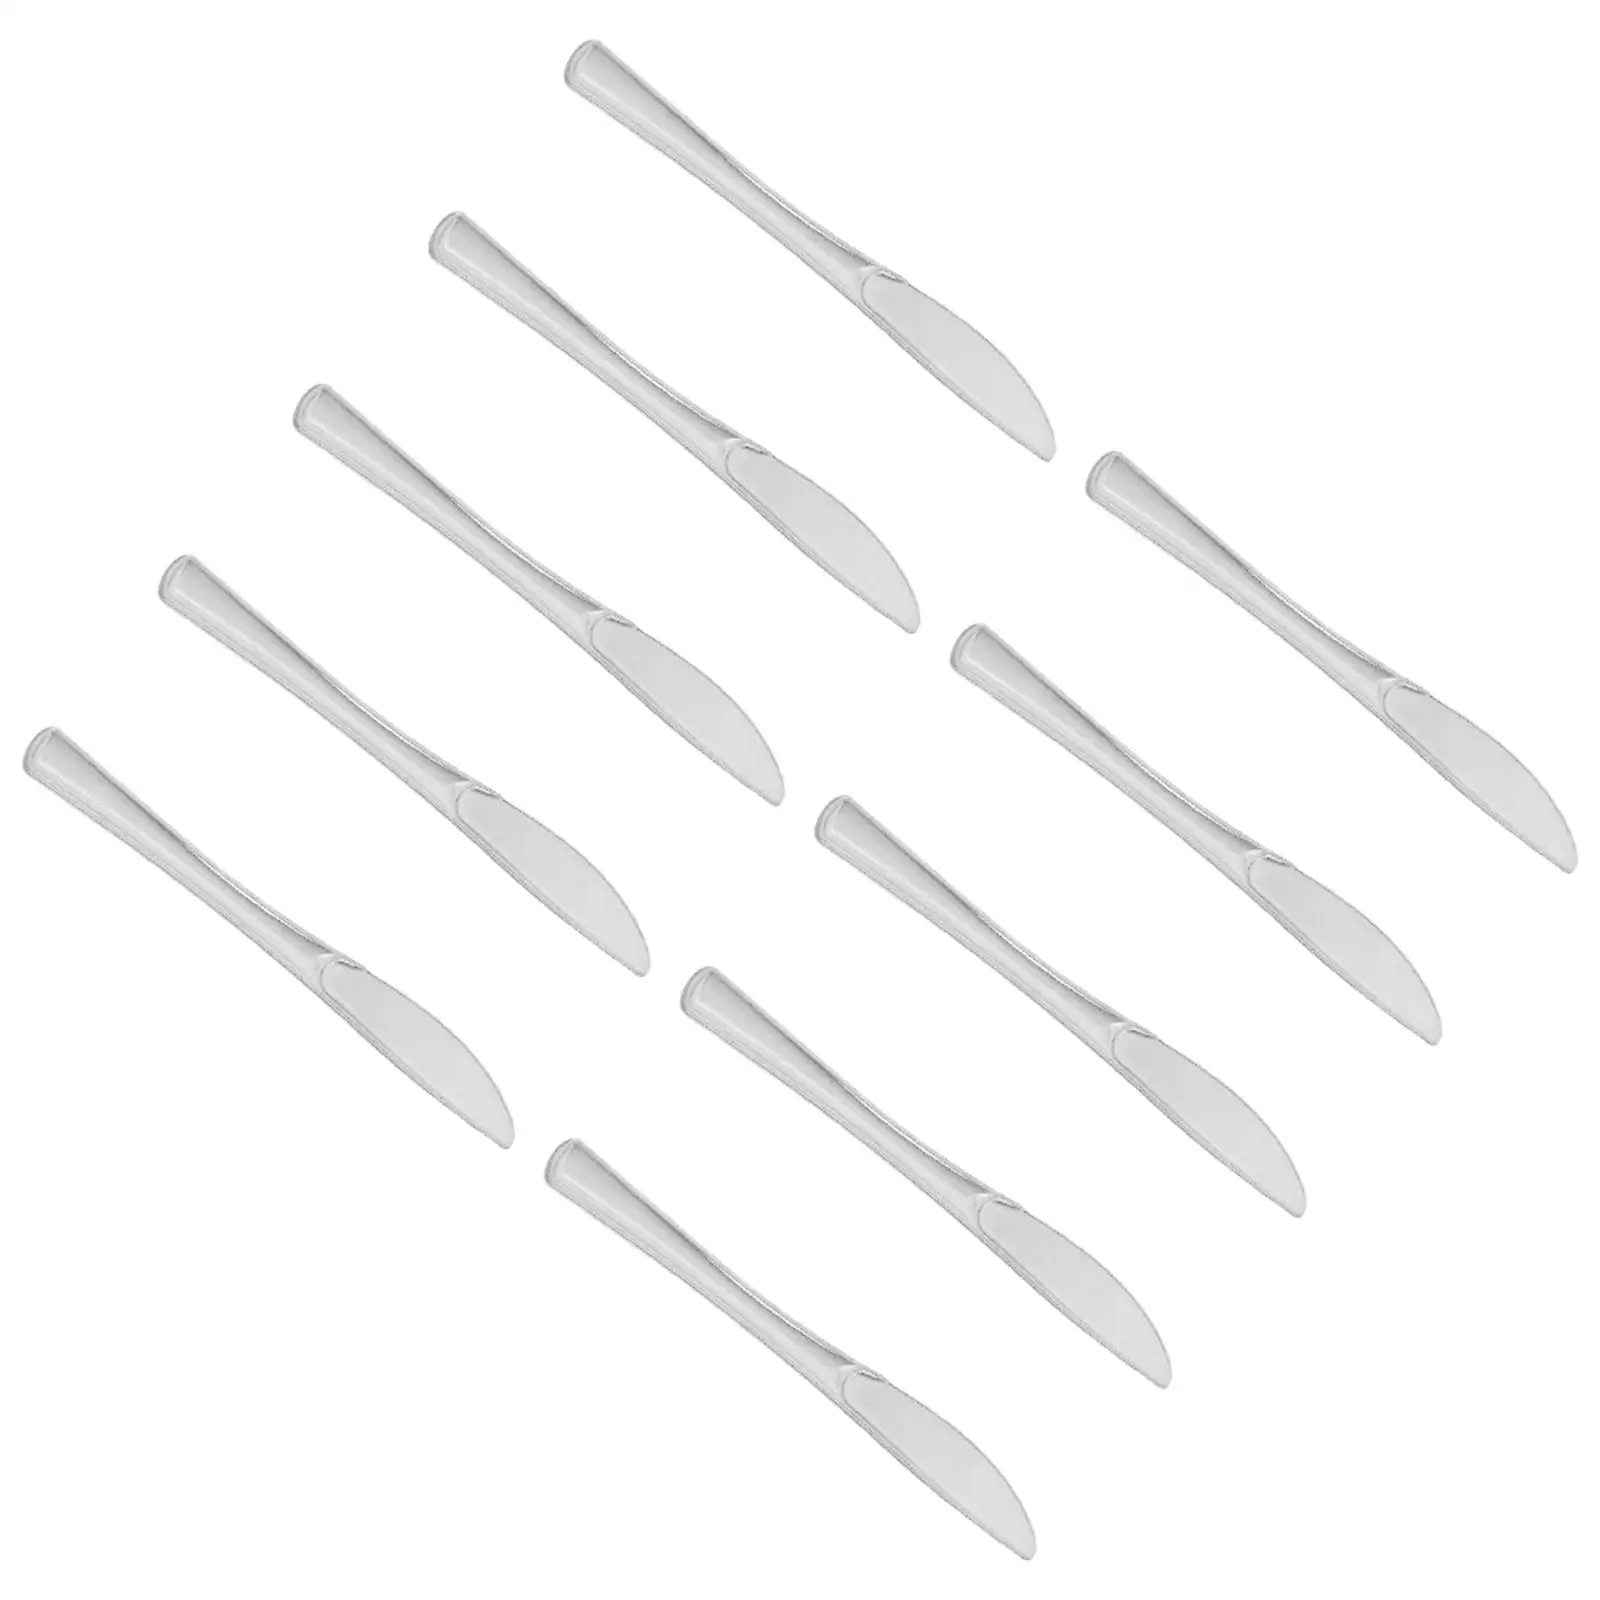  Flatware Sturdy Utensil Cutlery Kit for Dinners Restaurant Family